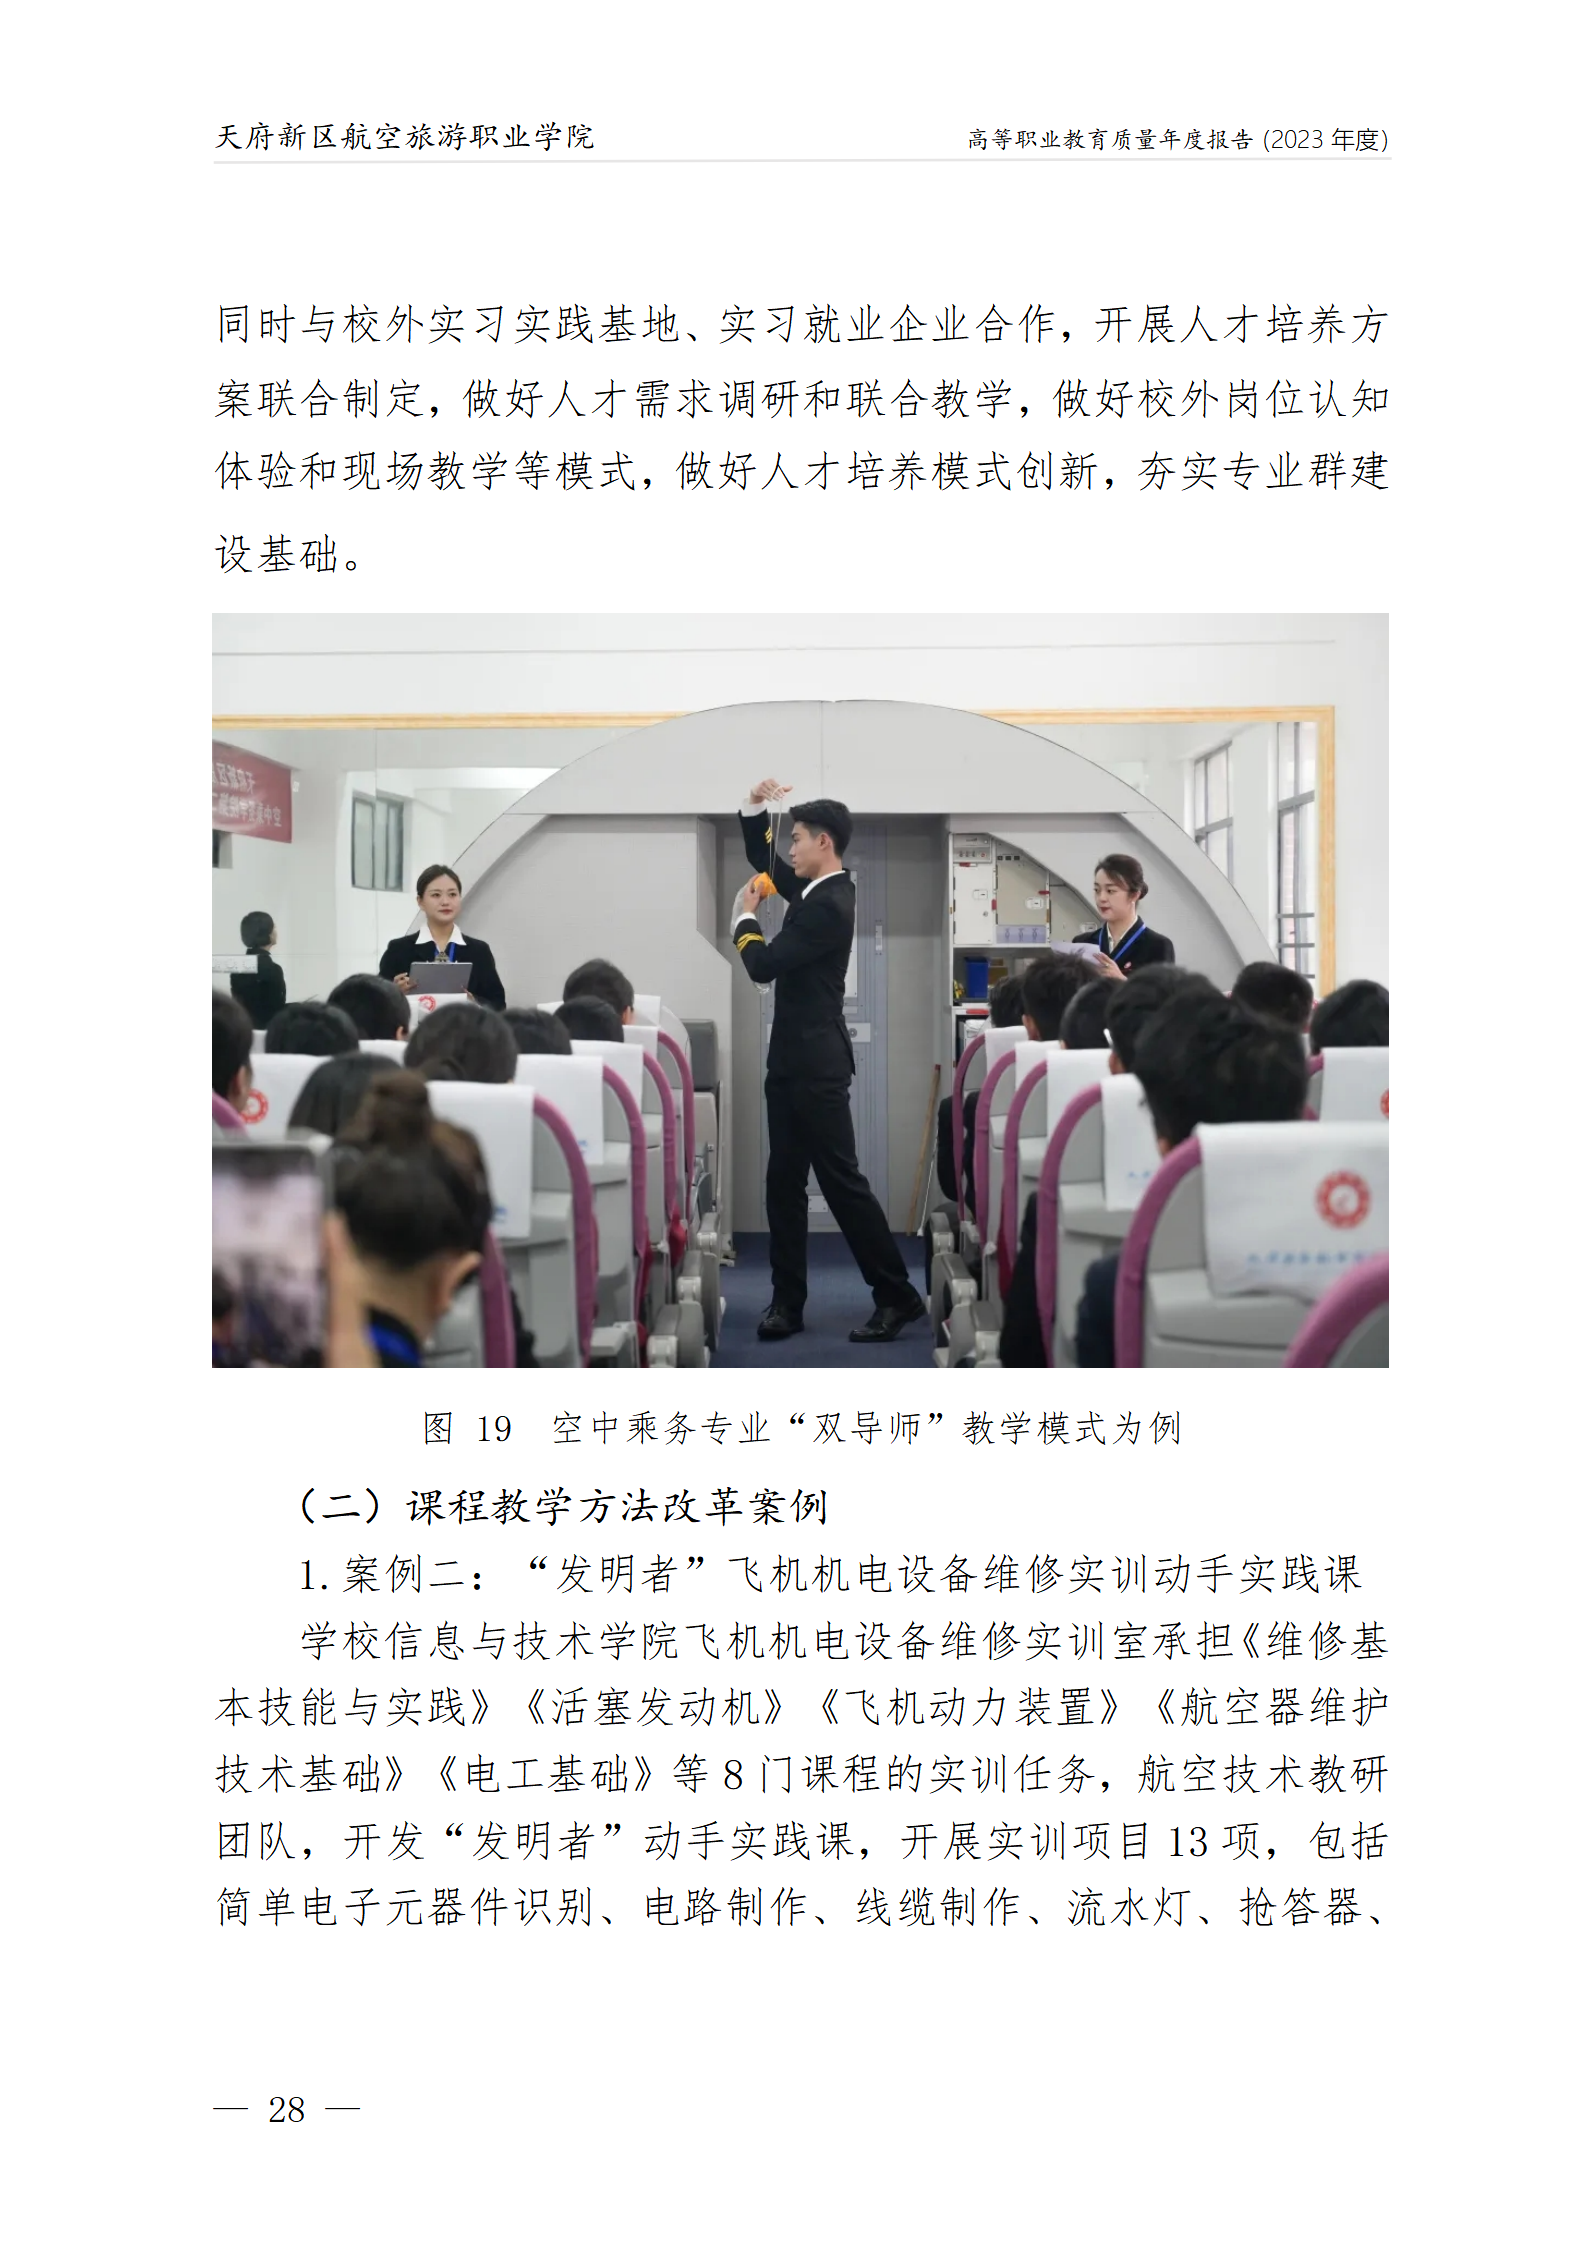 天府新區航空旅游職業學院2023年度職業教育質量年報1230（網站版）_32.png